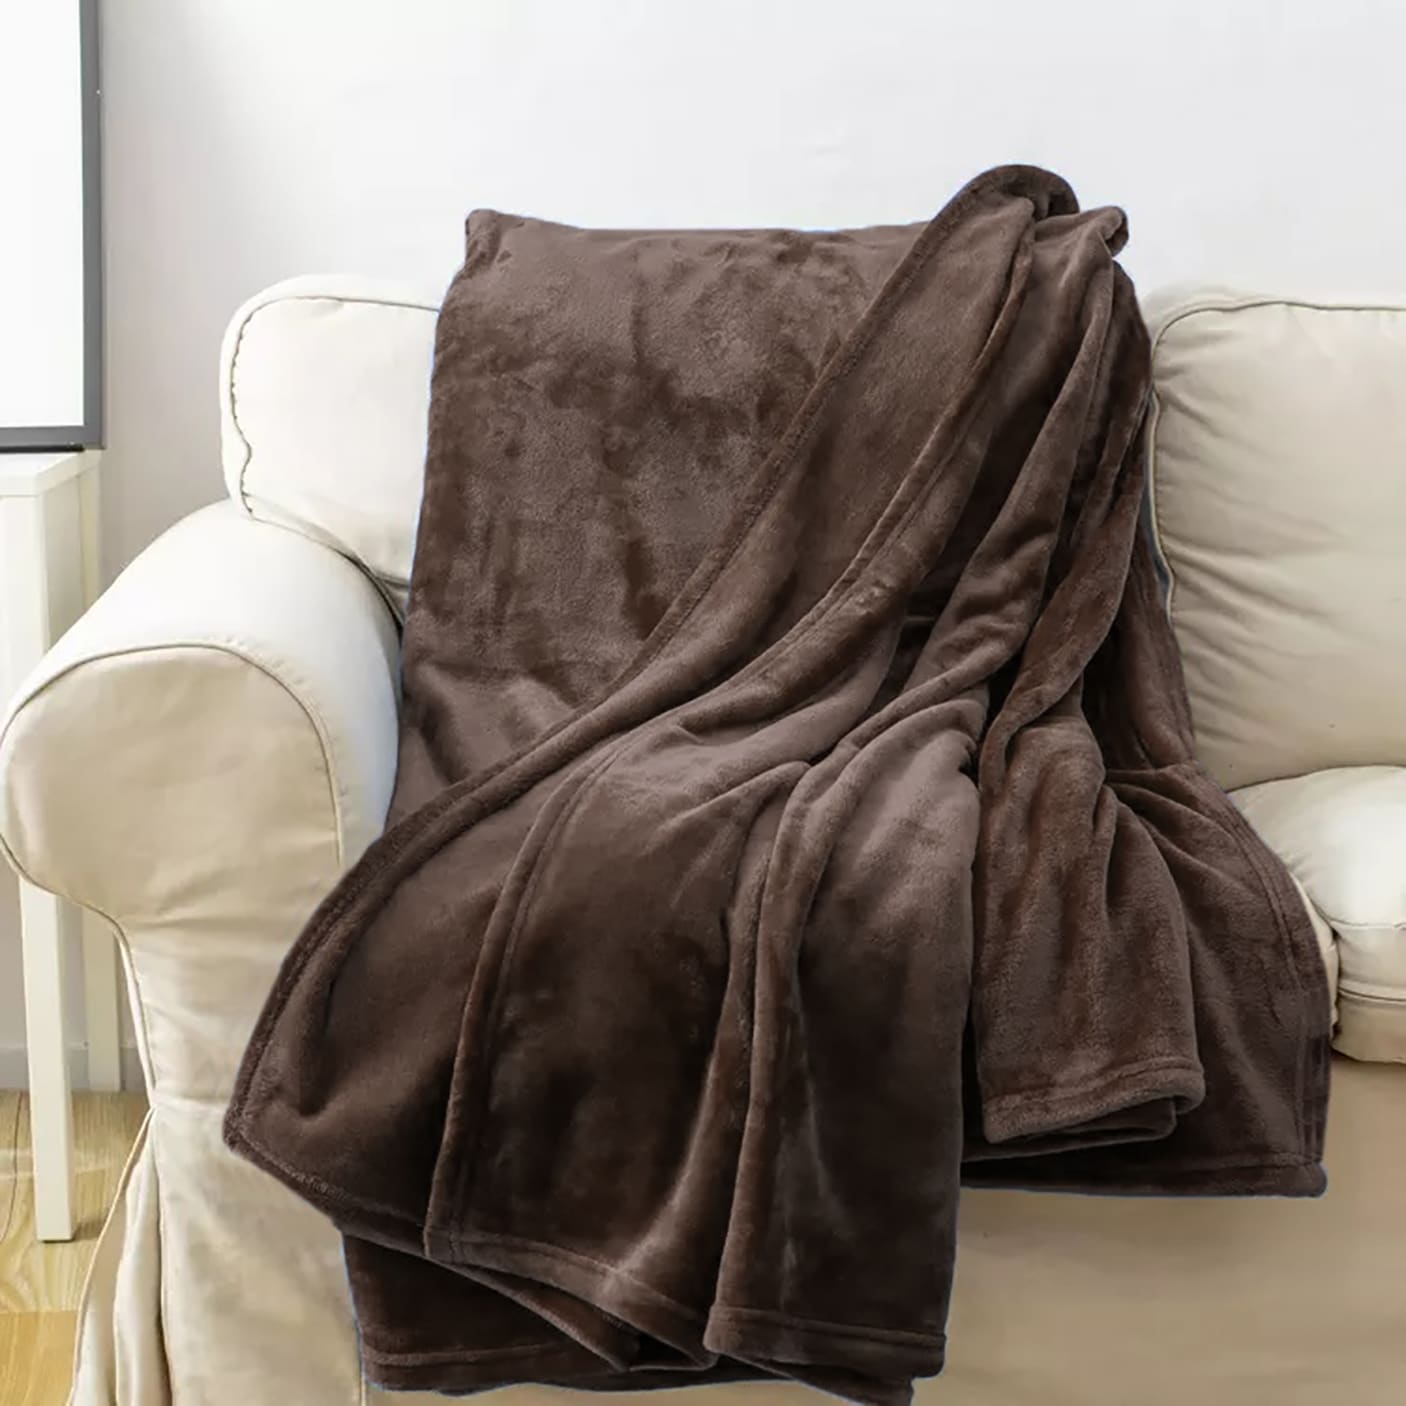 Coral Blanket - Fleece Blankets